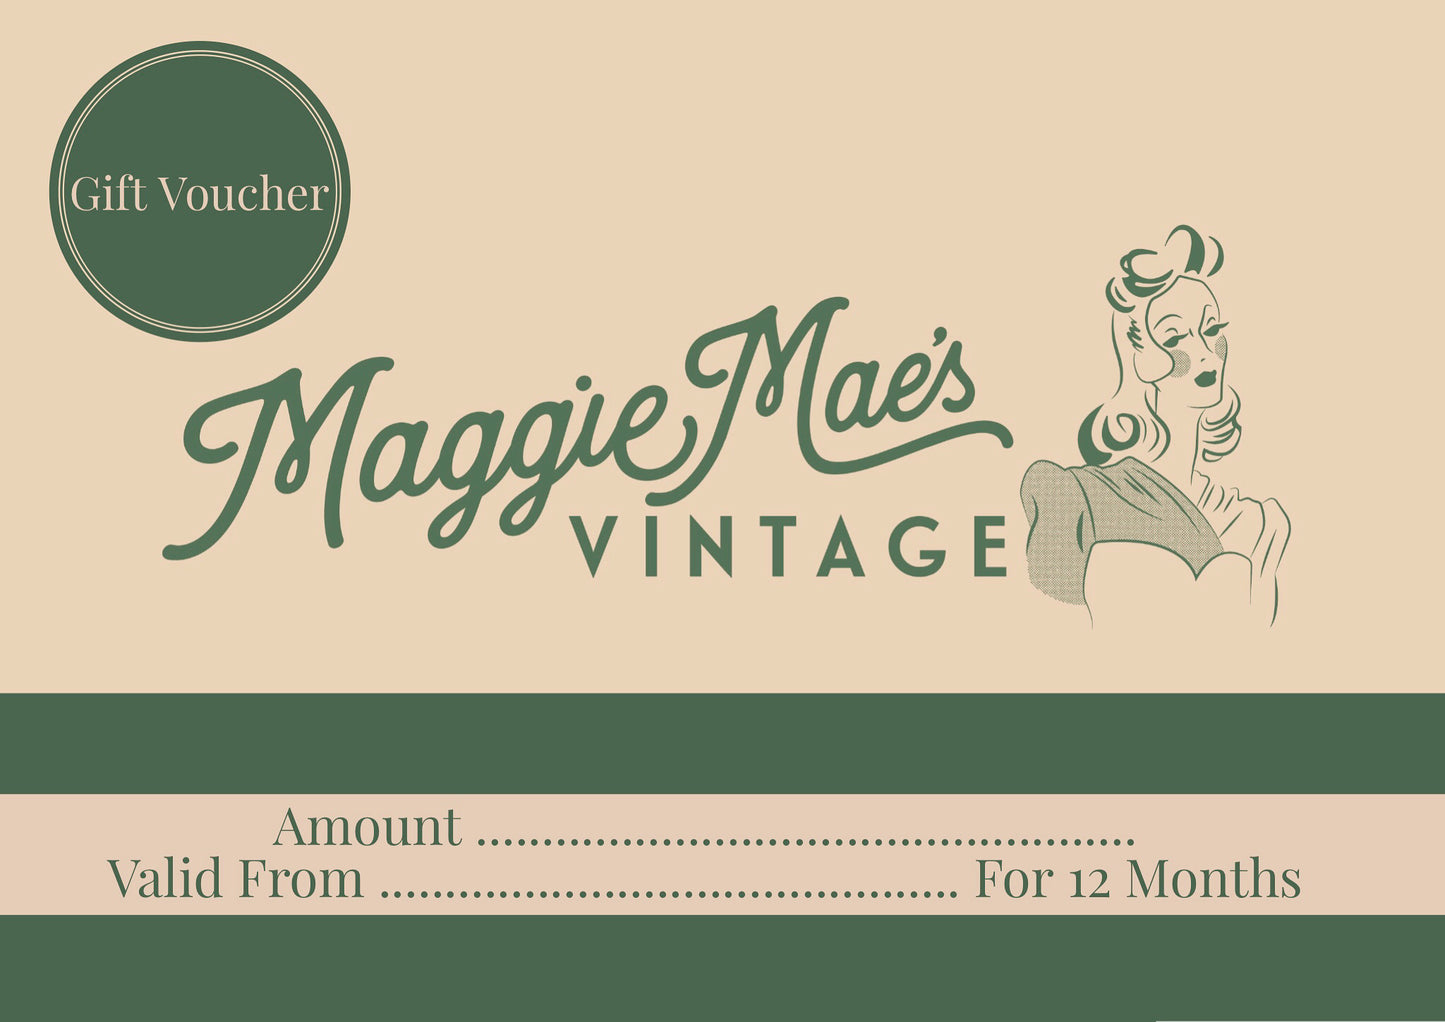 Maggie Maes Vintage Gift Voucher